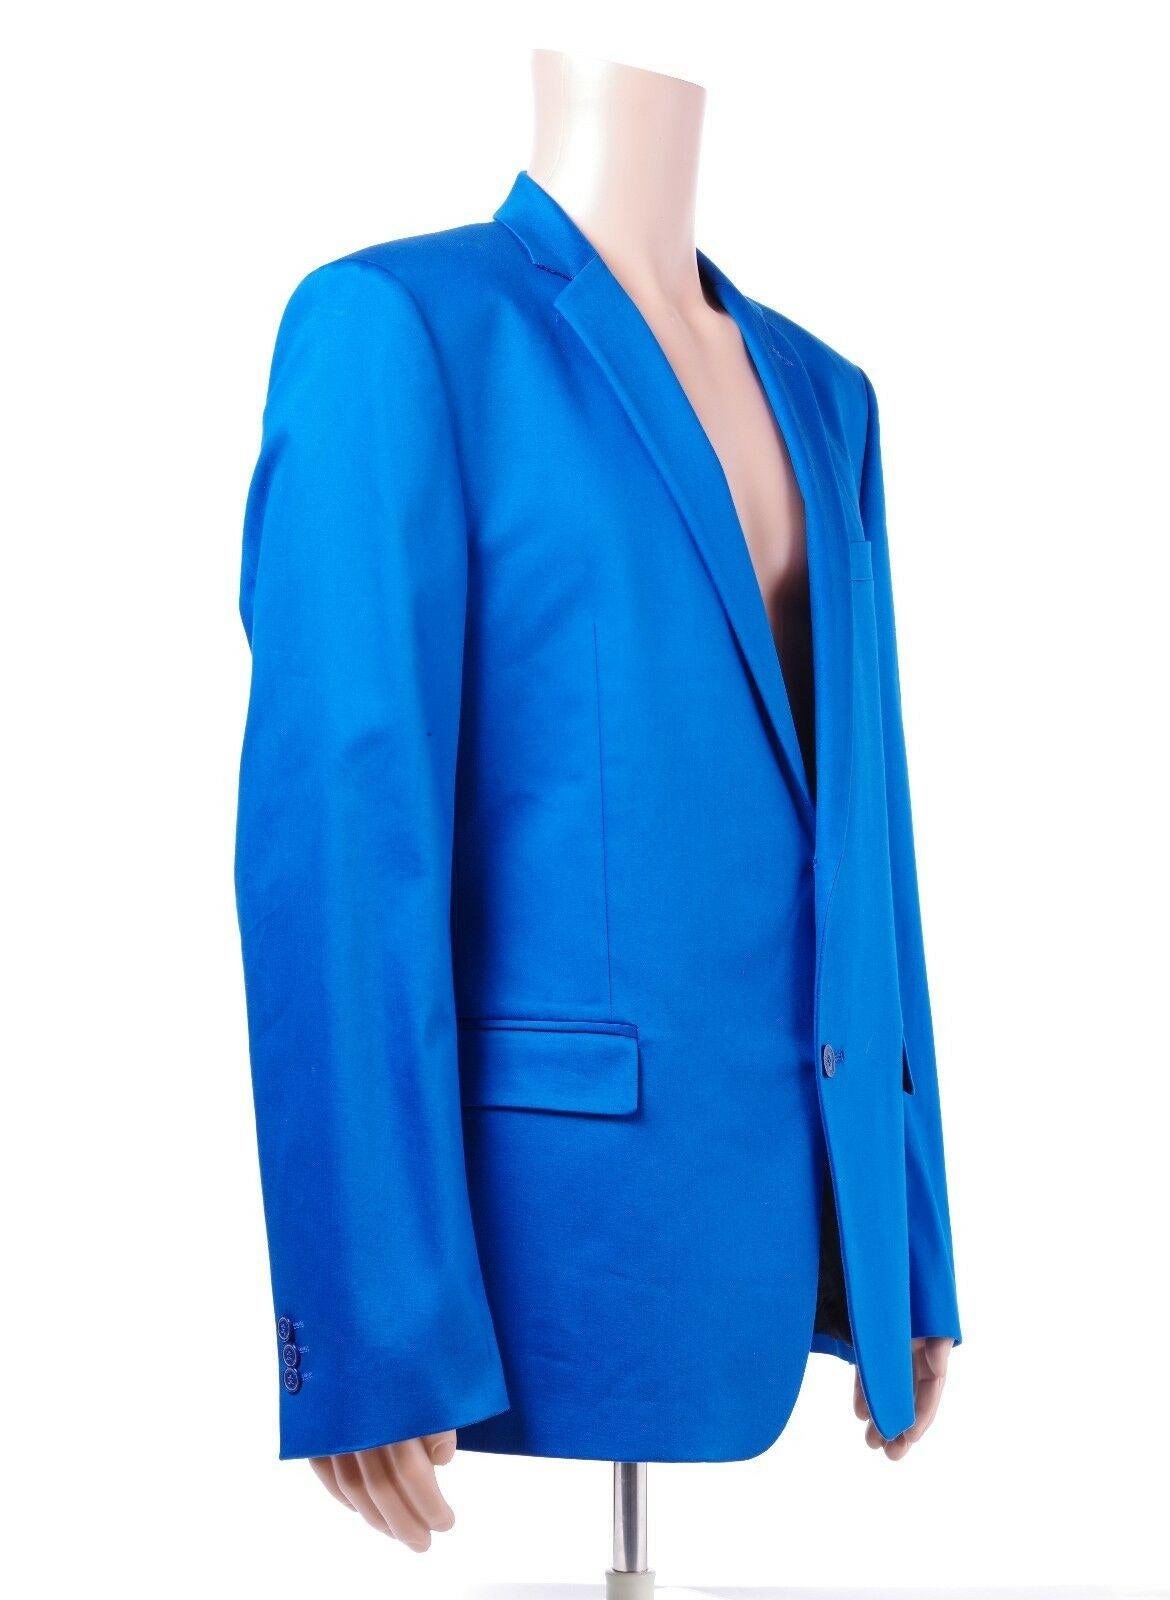 versace blue suit